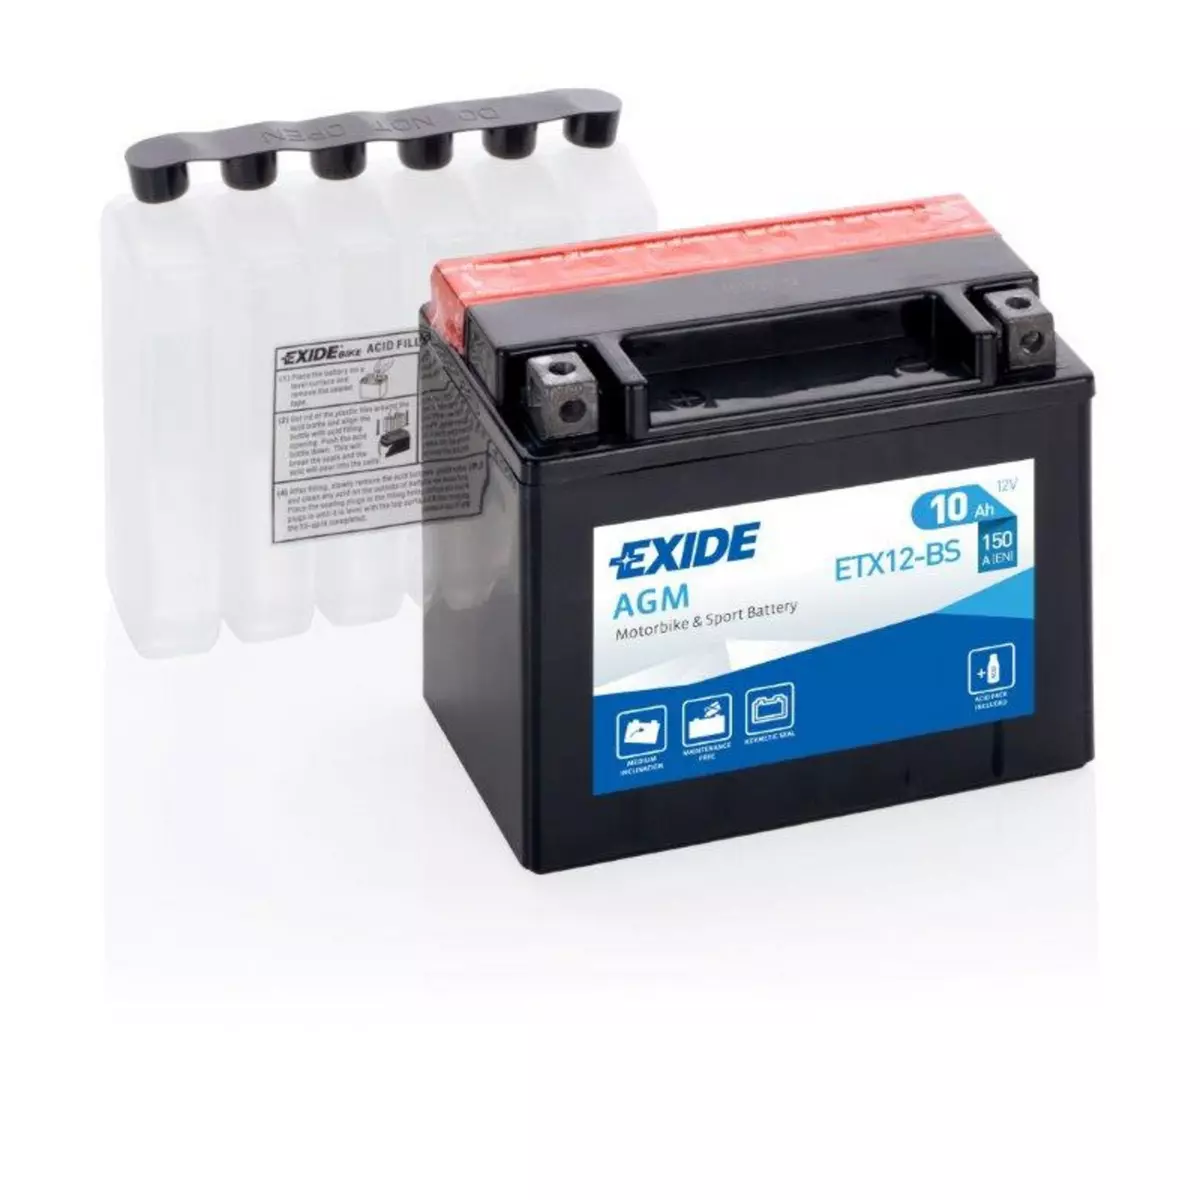 EXIDE Batterie moto Exide ETX12-BS YTX12-BS 12v 10ah 150A